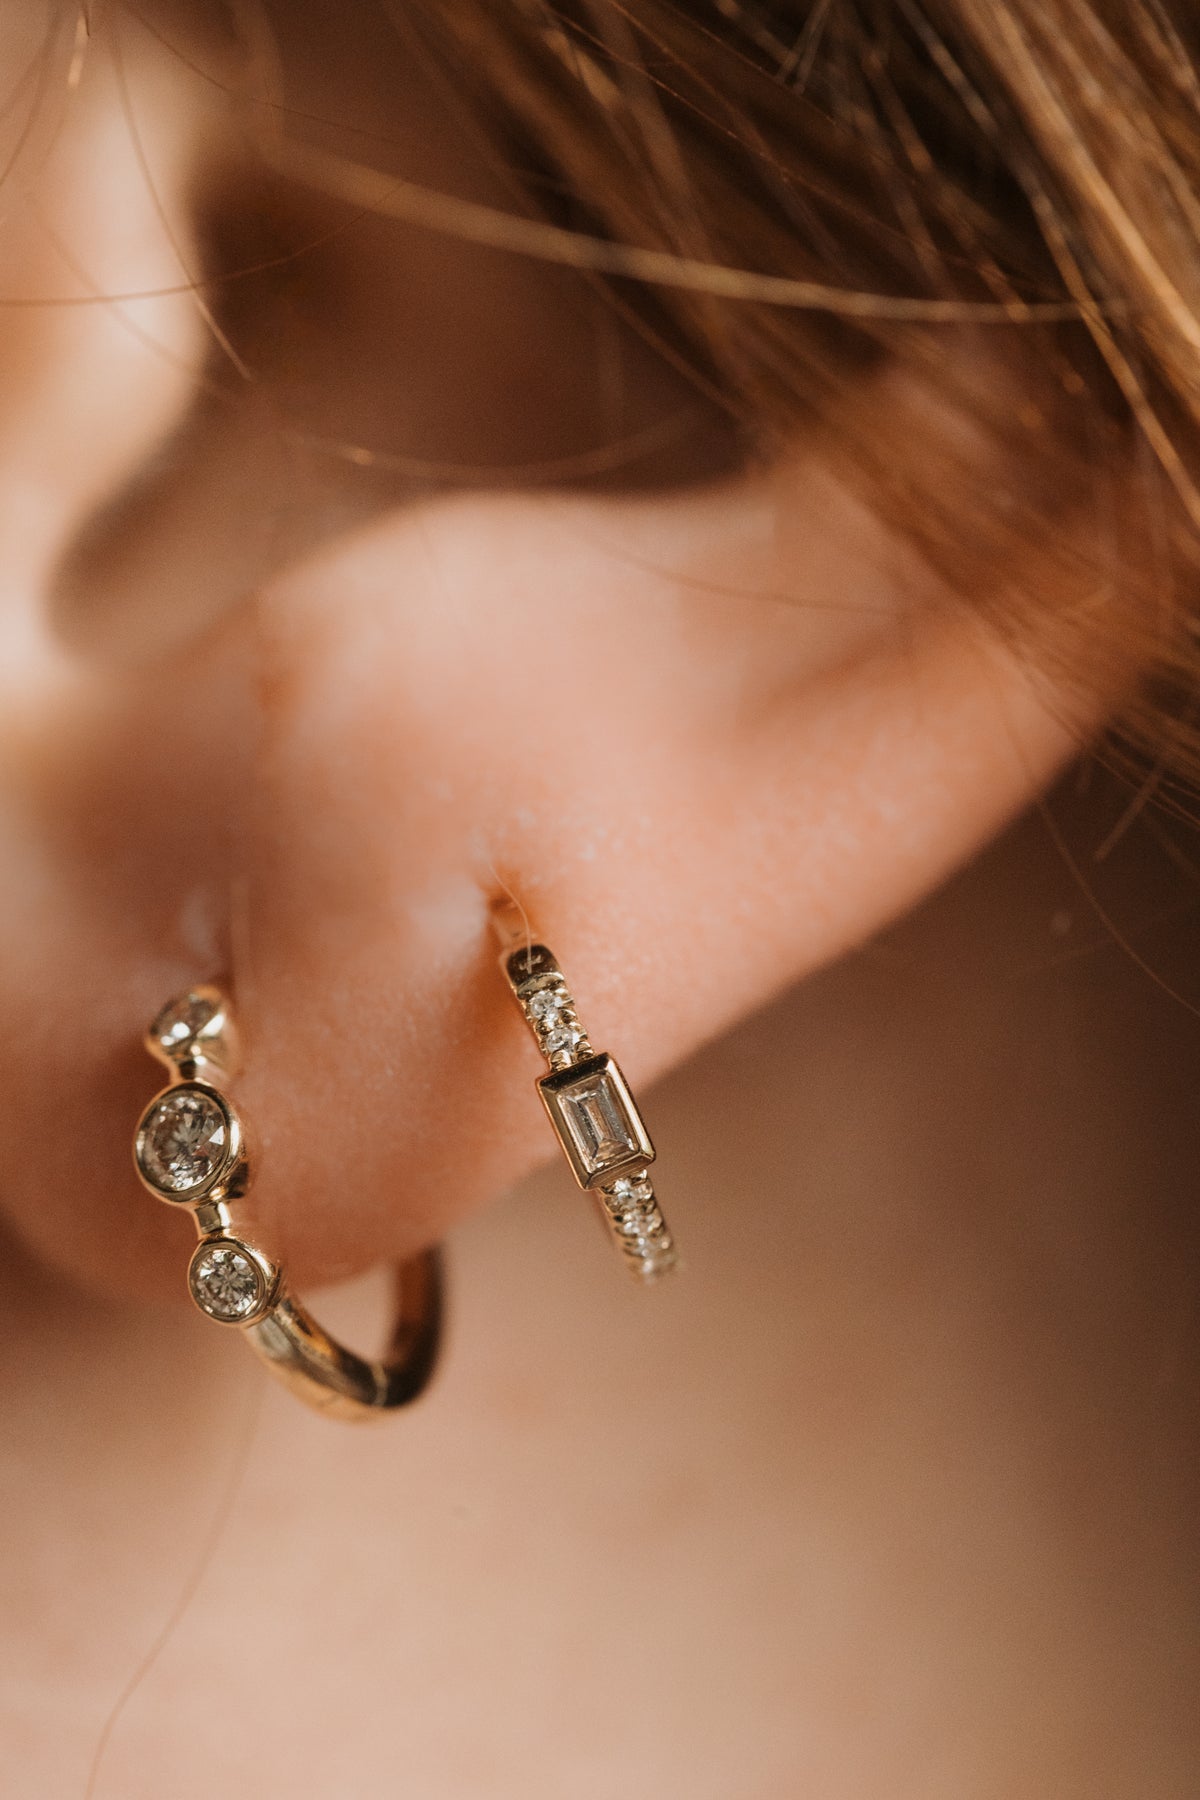 Hyacinth Earrings